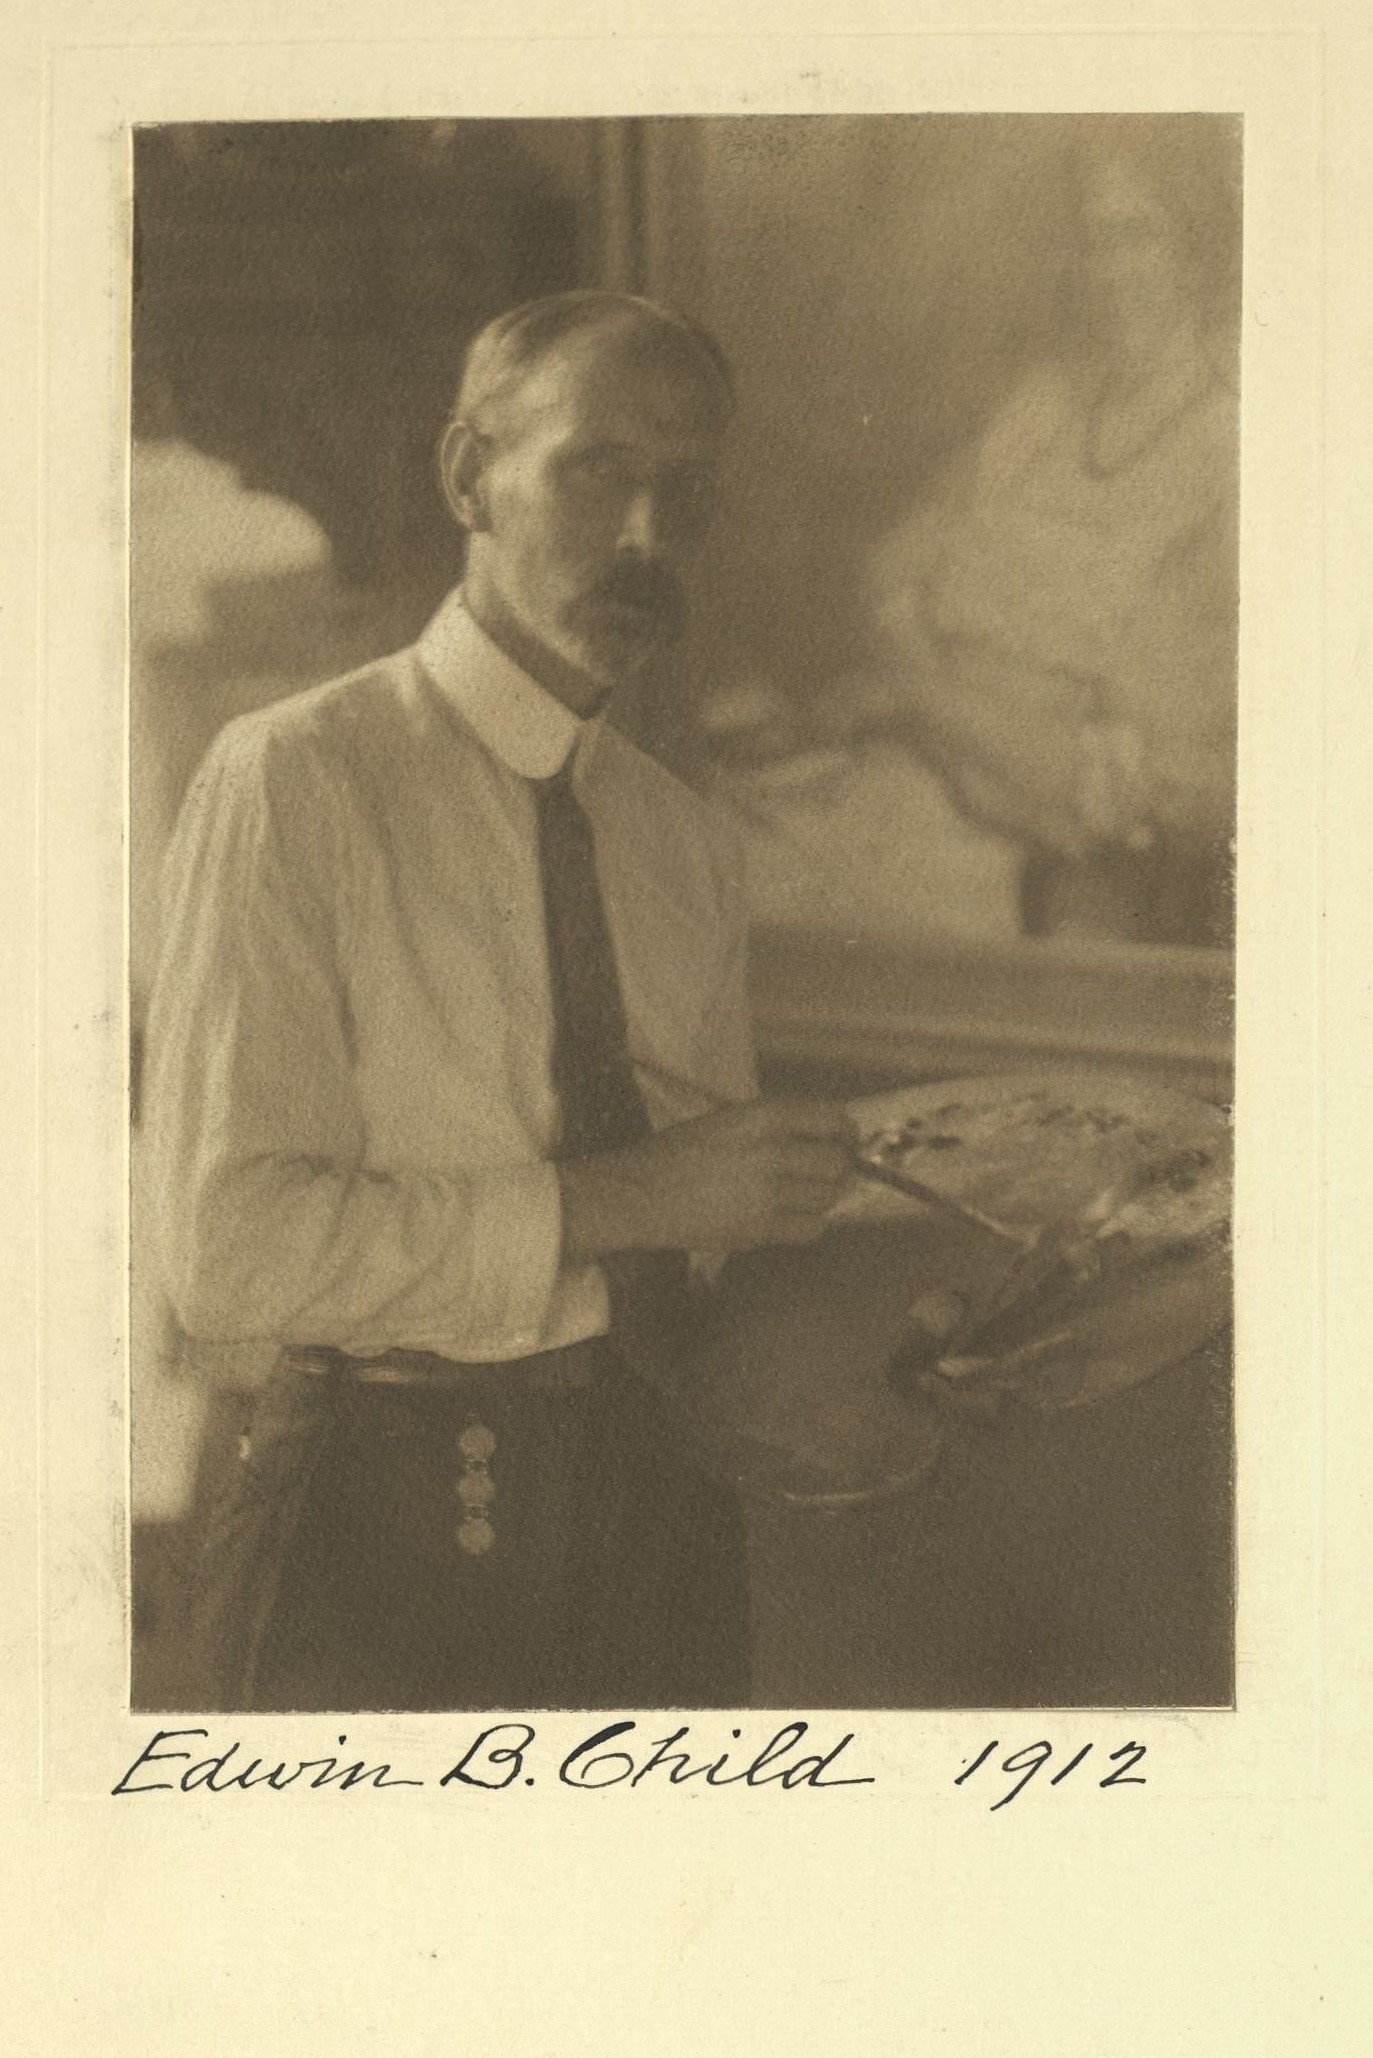 Member portrait of Edwin B. Child